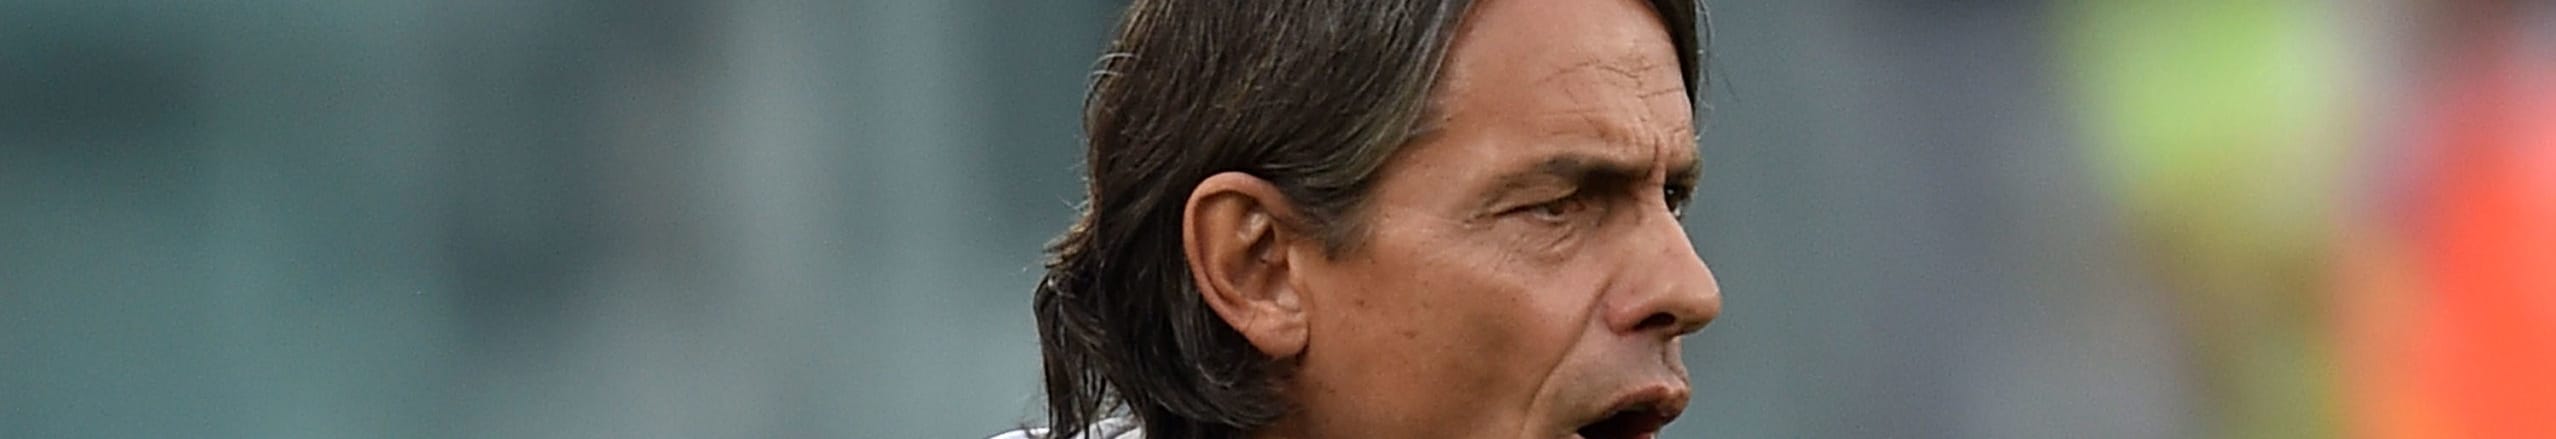 Benevento-Sampdoria, Inzaghi vuole ripartire